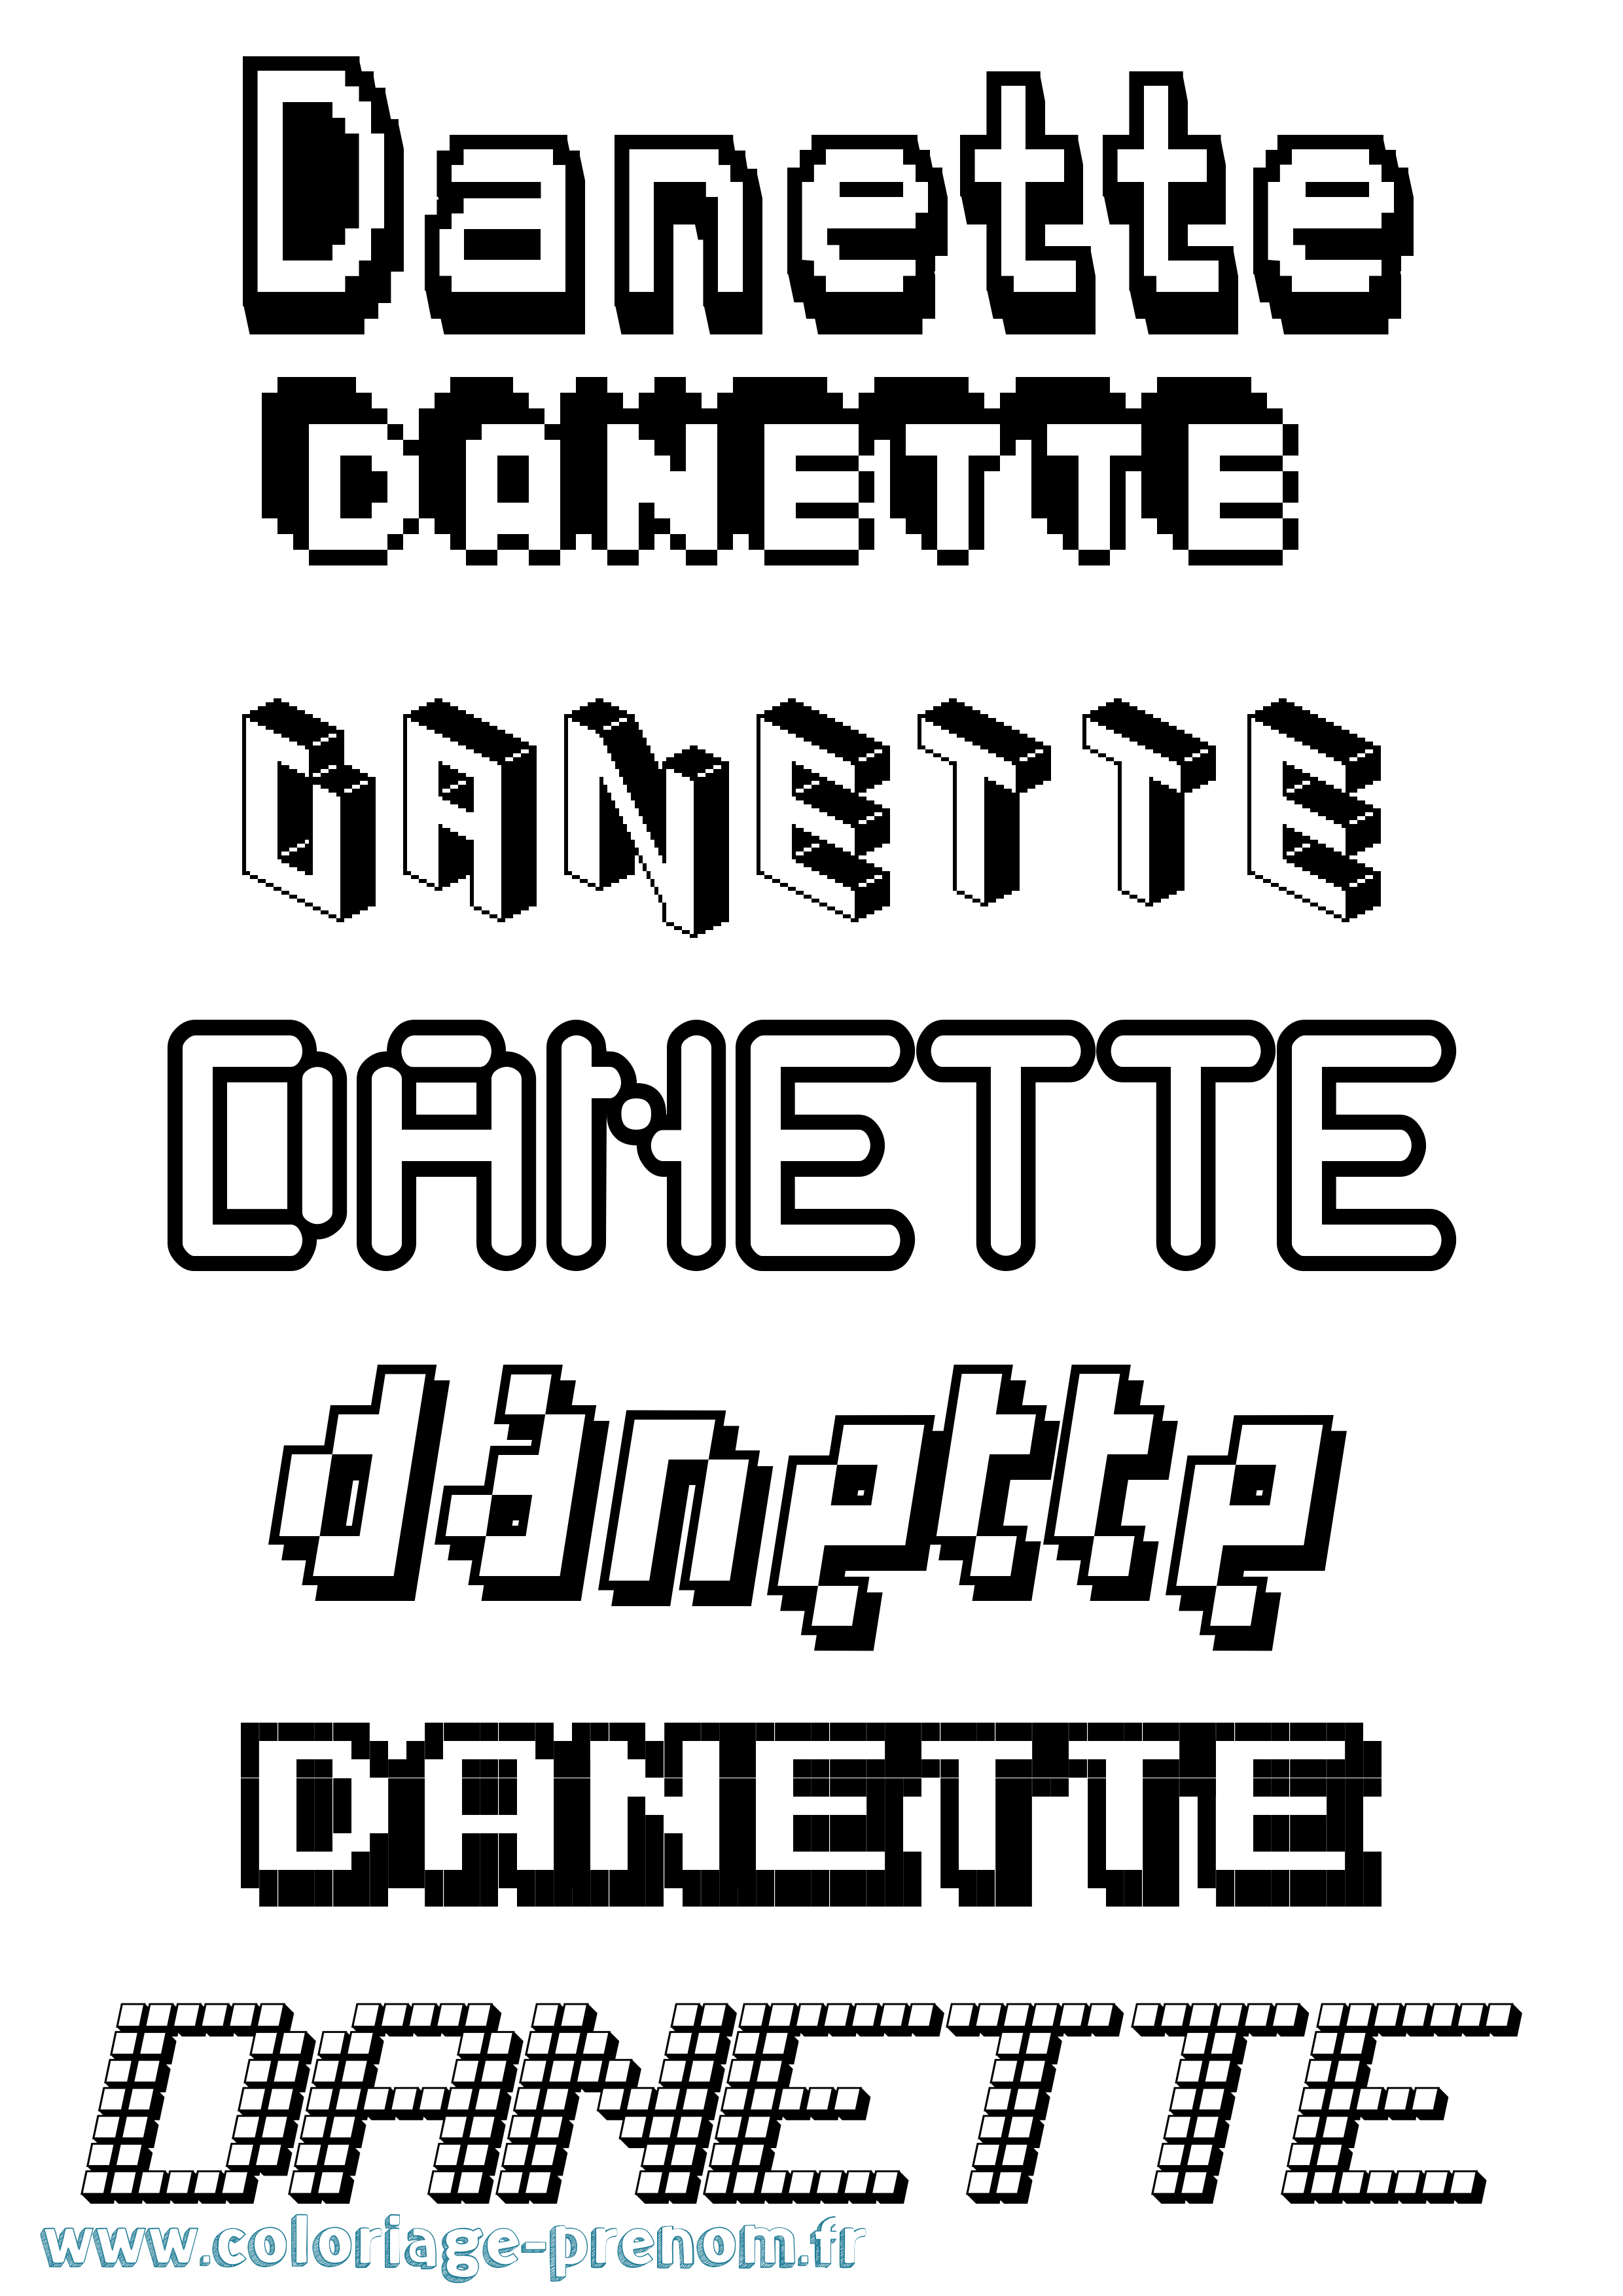 Coloriage prénom Danette Pixel